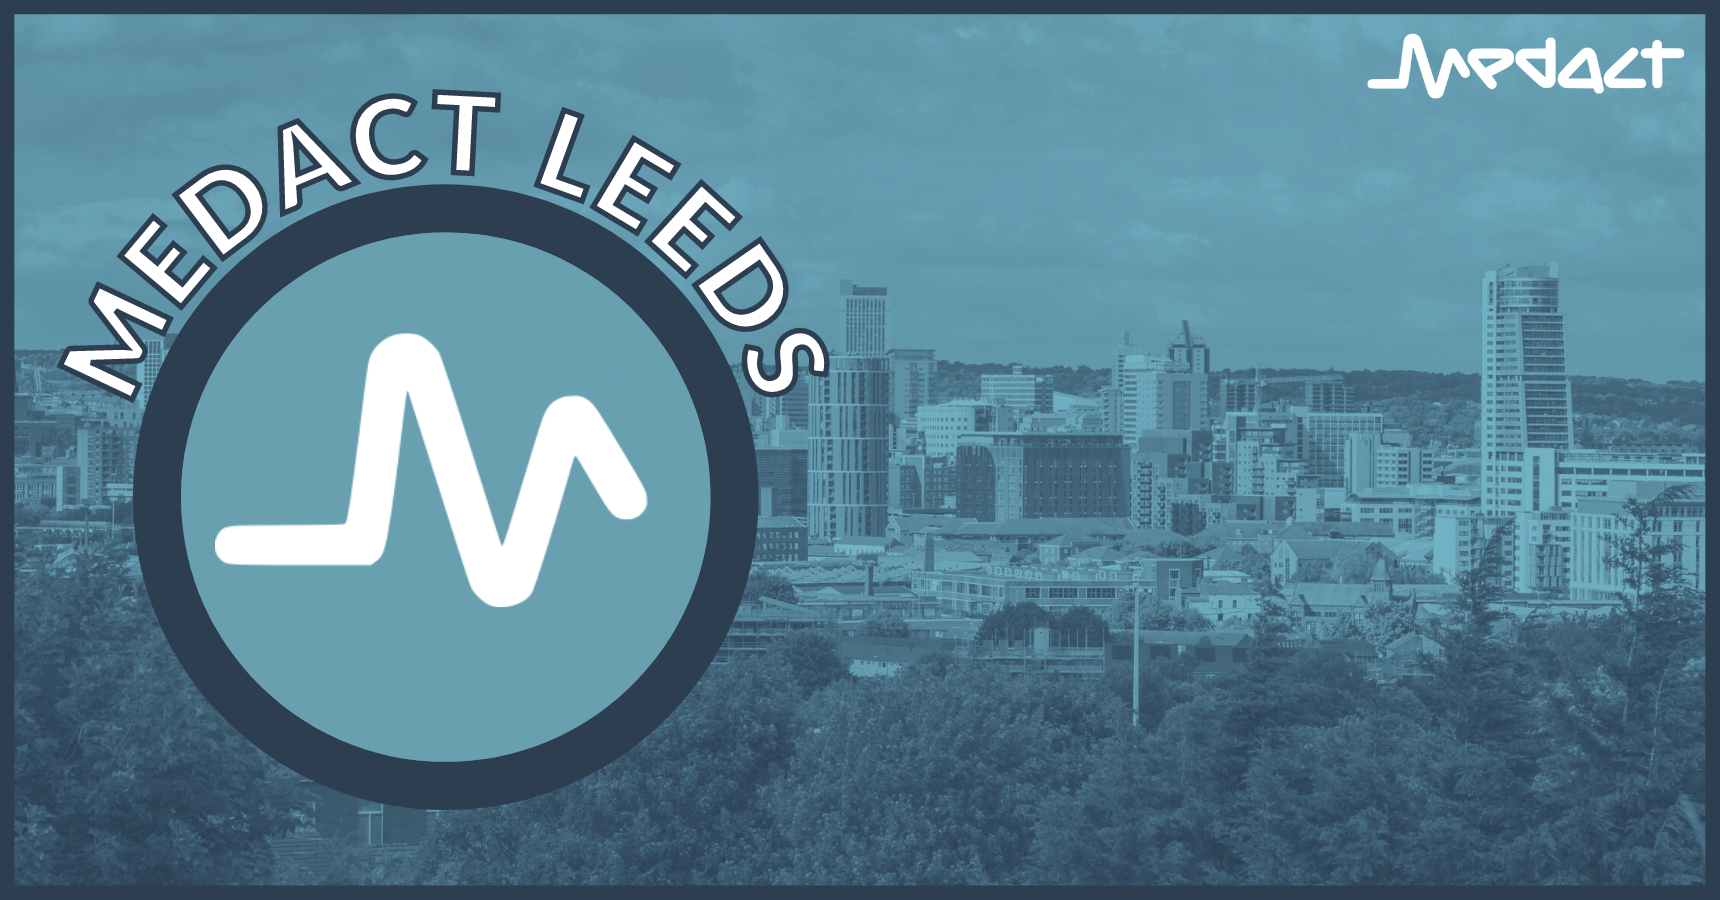 Medact Leeds group meeting: June